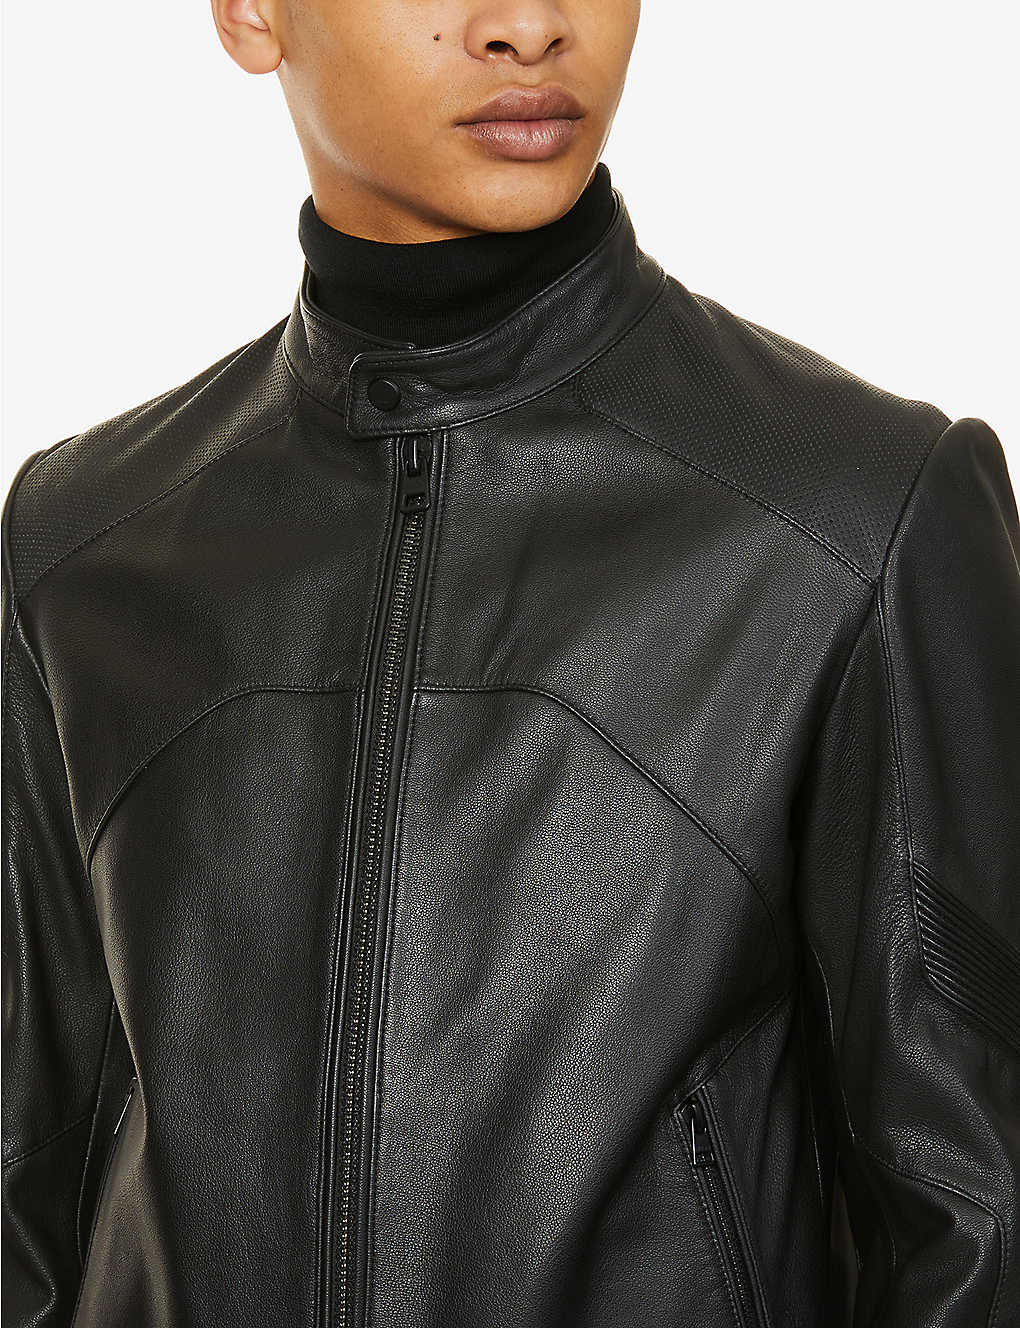 Men's Black Leather Perforated Biker Jacket